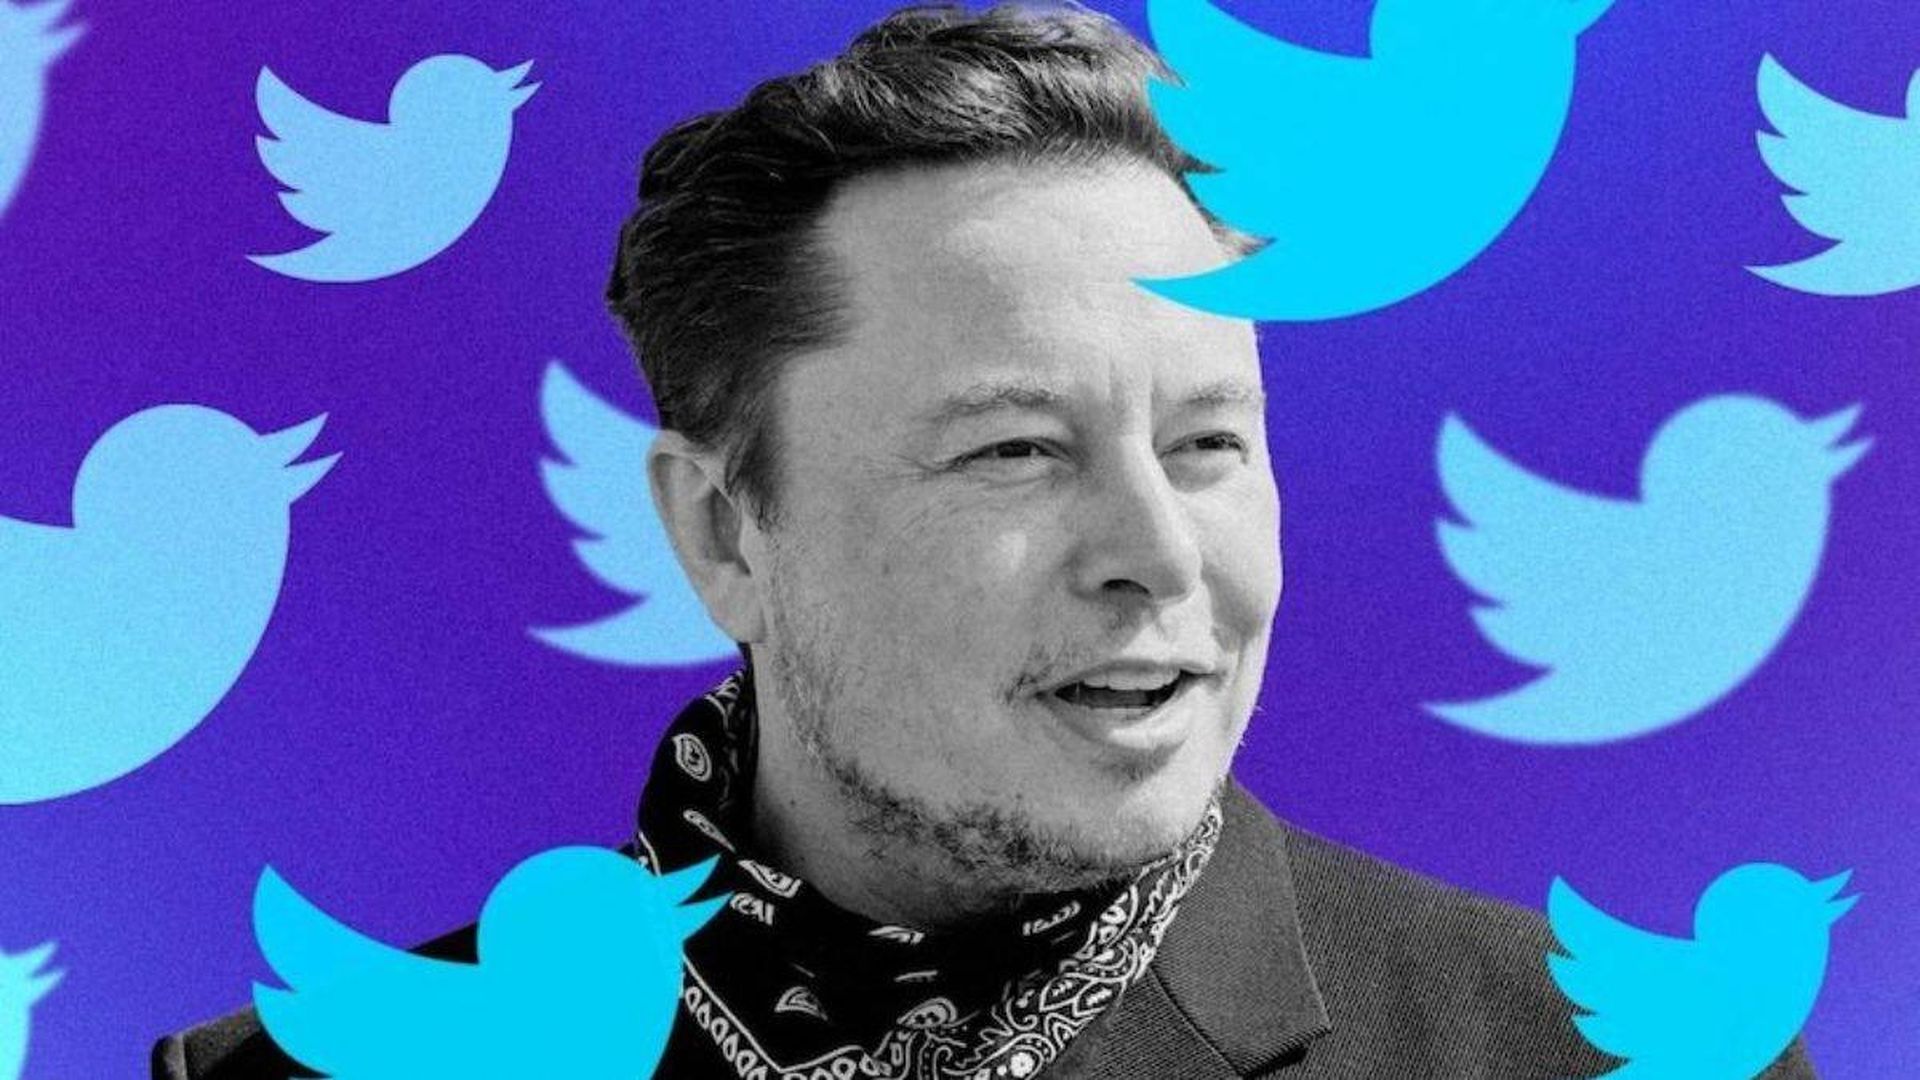 L’accordo su Twitter di Elon Musk è sospeso